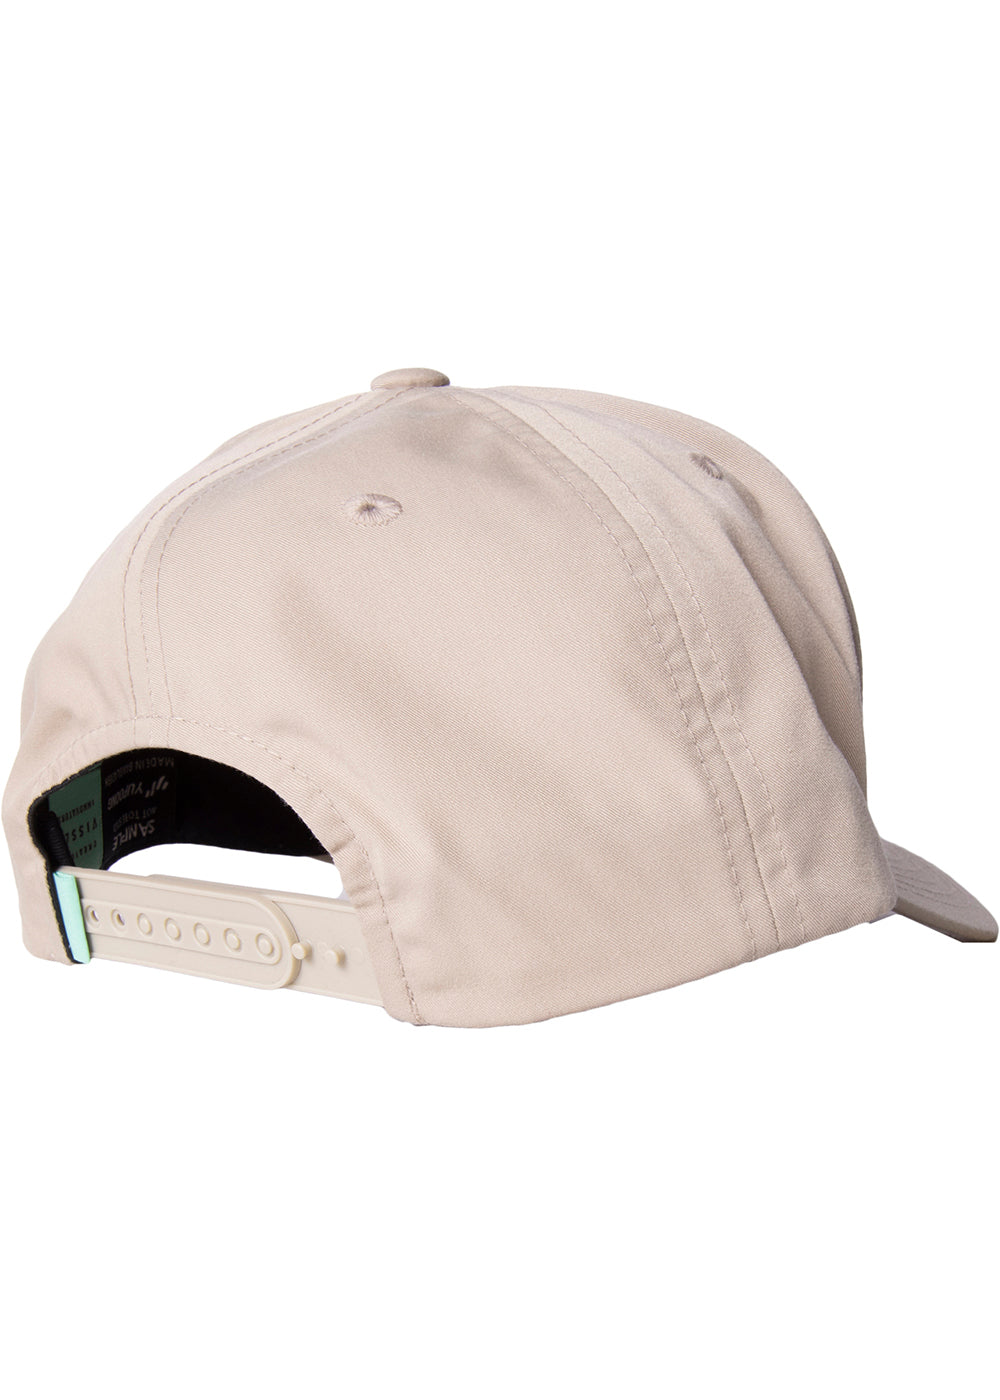 Gorra Seven Seas Eco Hat - khaki FW